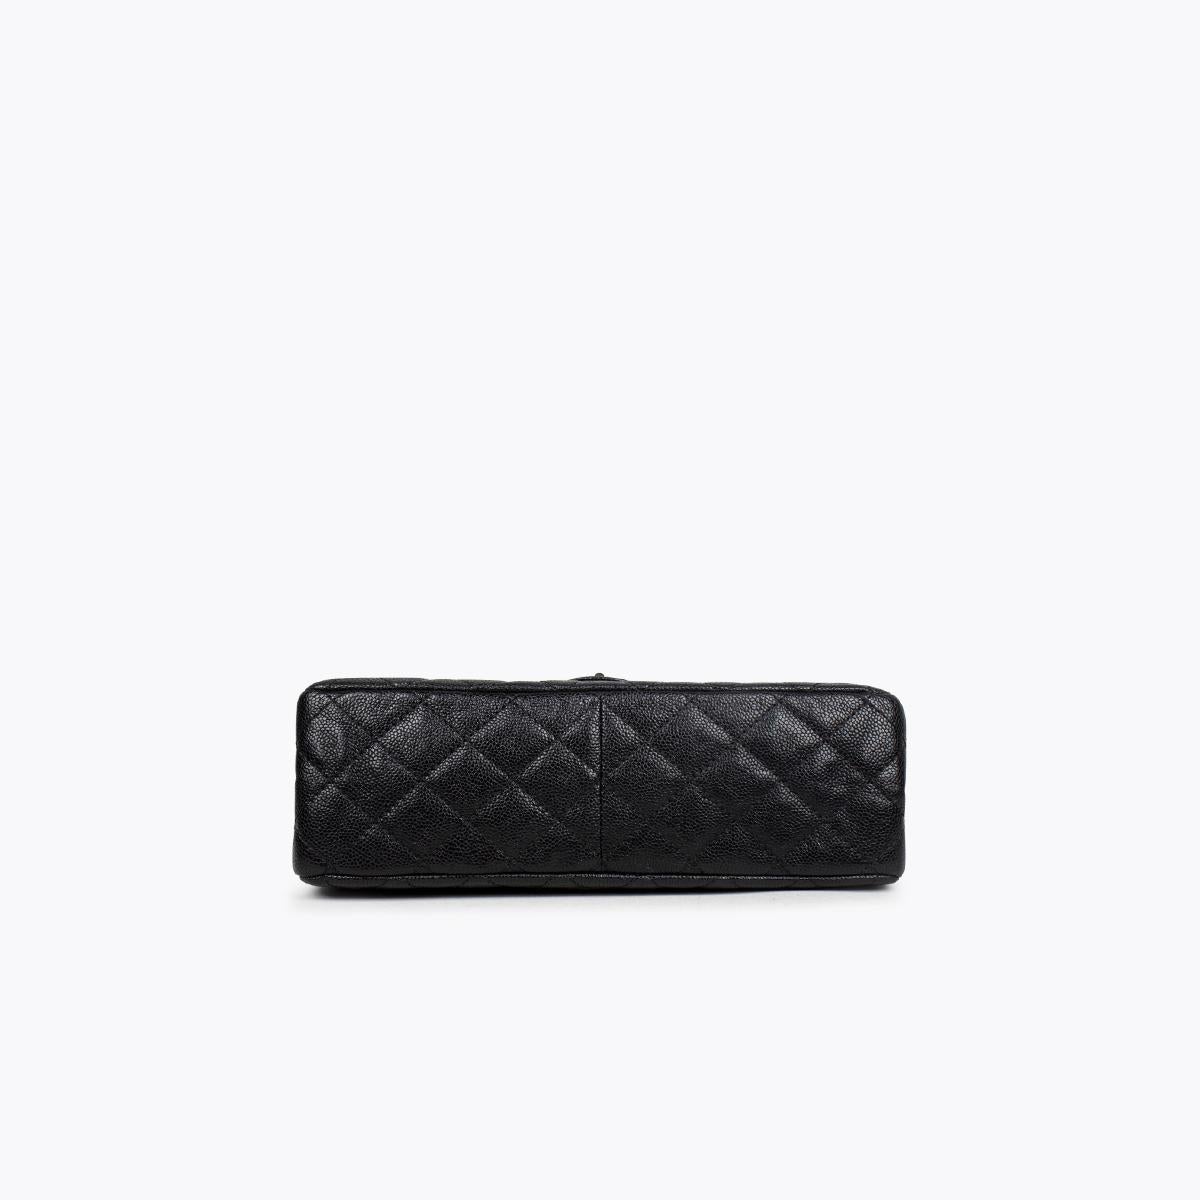 Black Chanel Caviar Reissue 226 Double Flap Bag